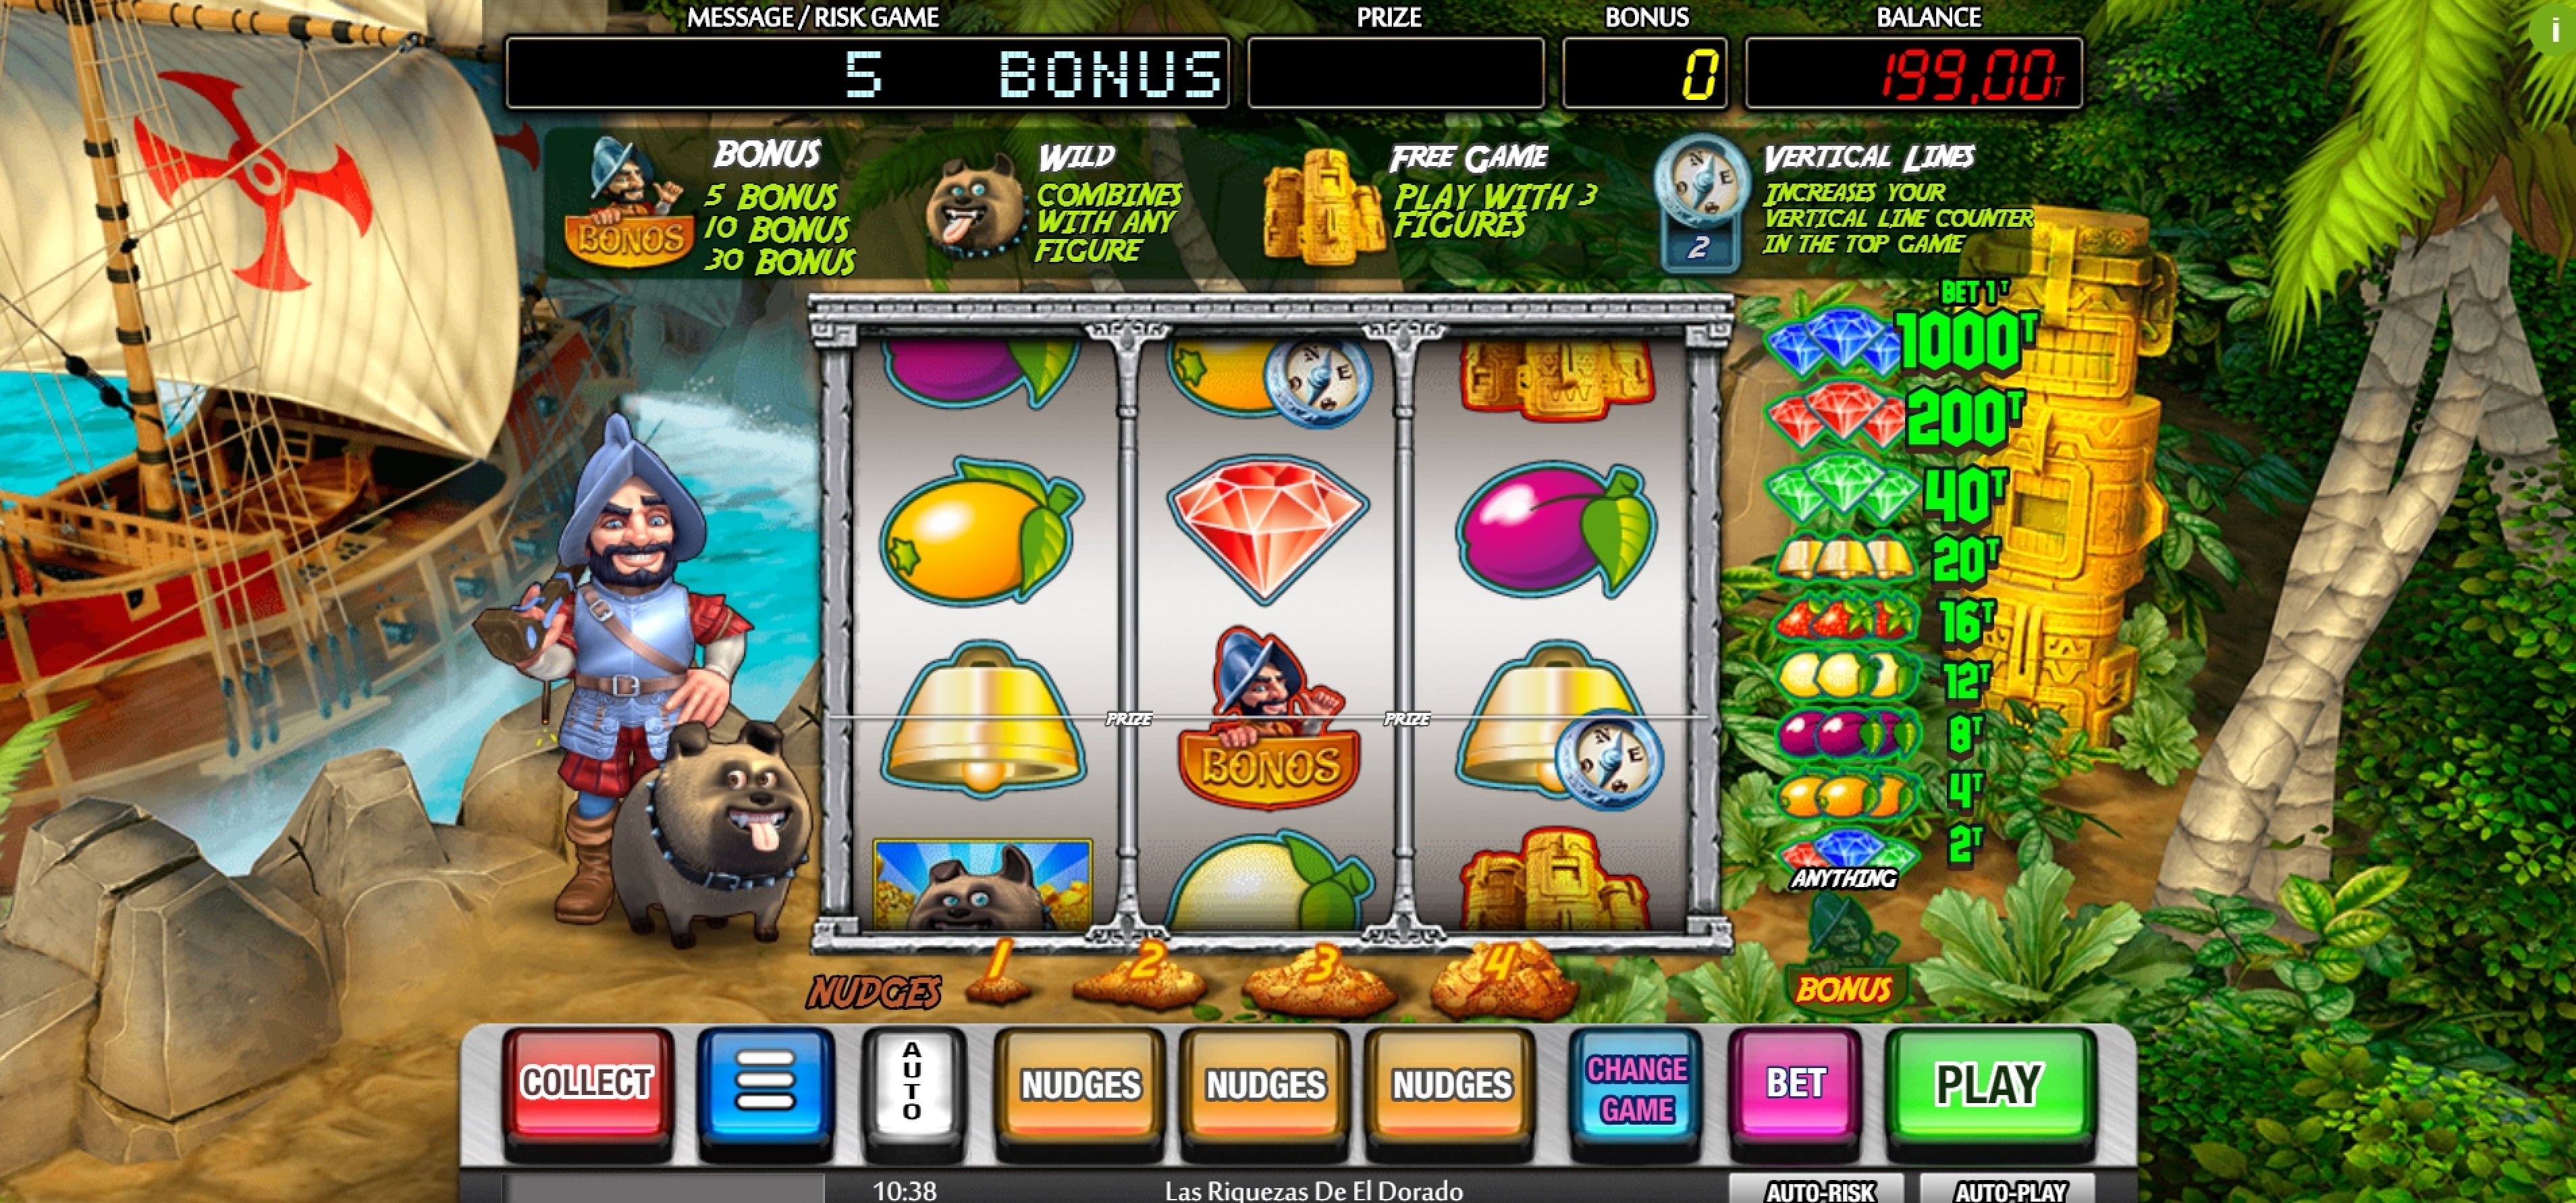 Win Money in Las Riquezas De El Dorado Free Slot Game by MGA